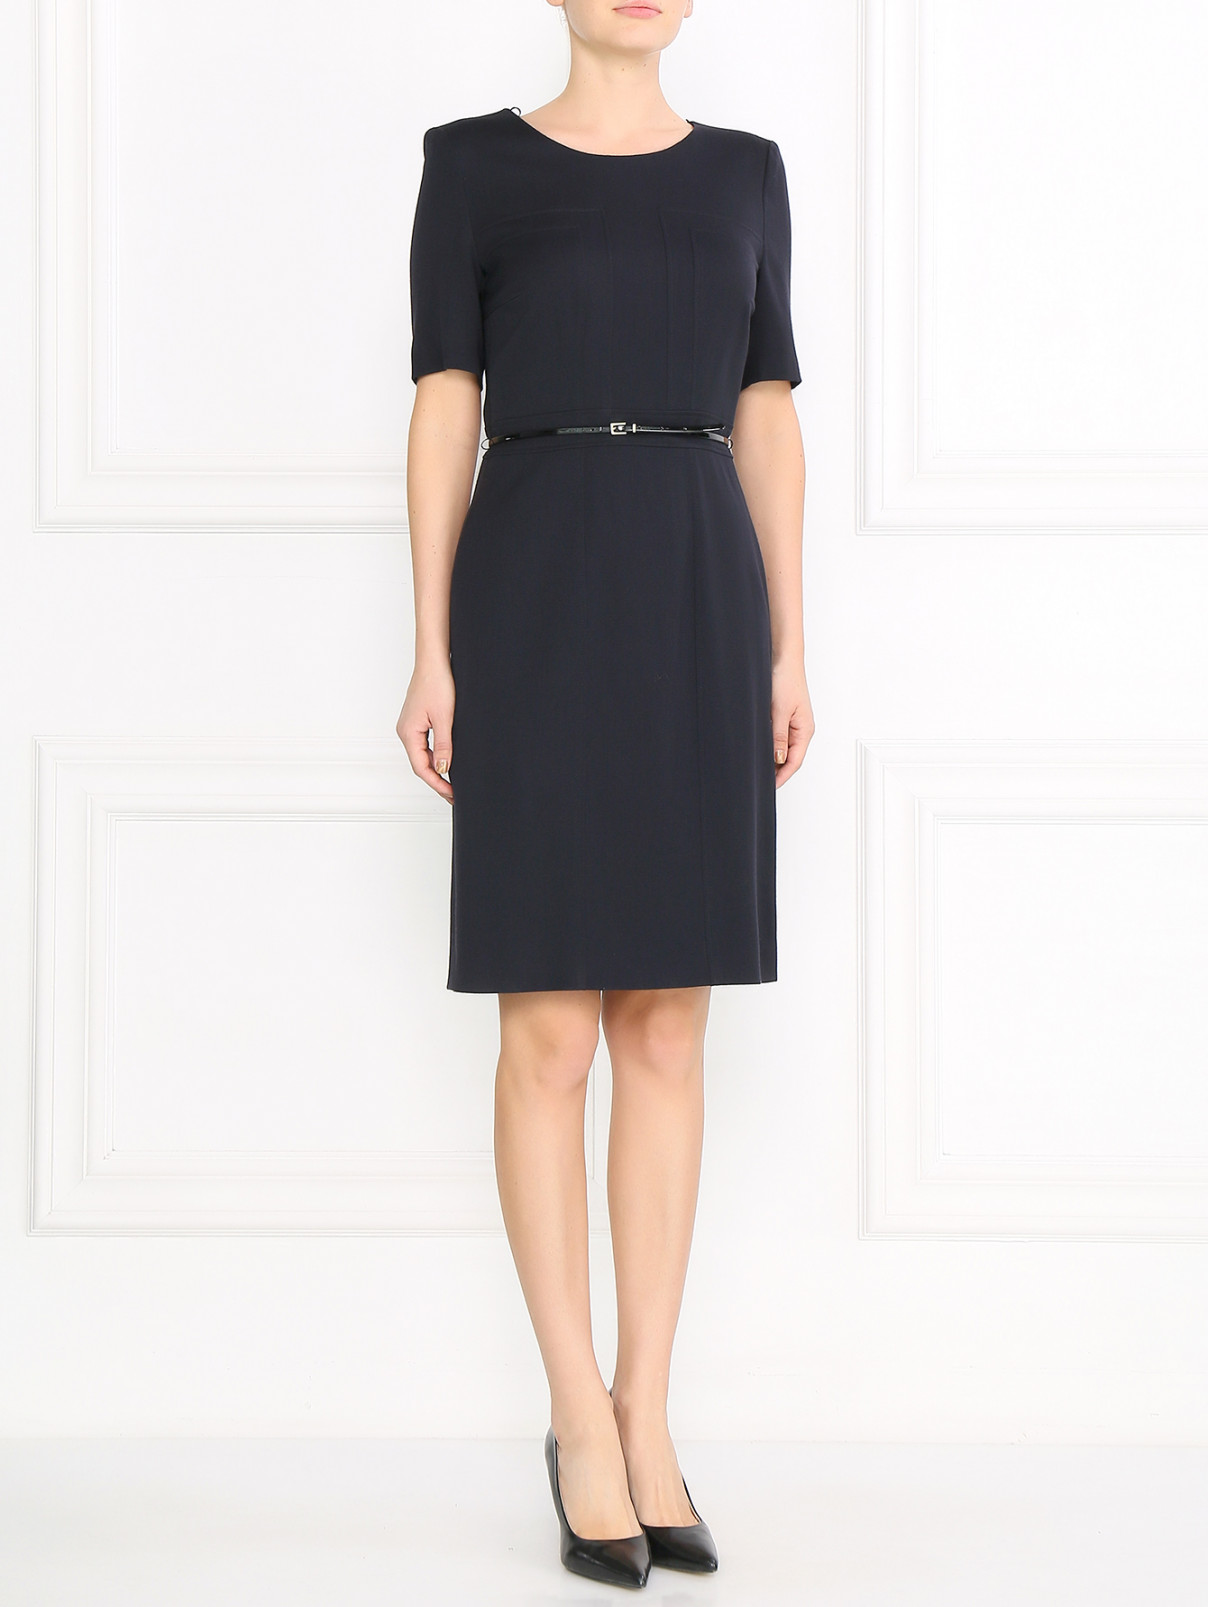 Платье из шерсти с поясом и короткими рукавами Boss  –  Модель Общий вид  – Цвет:  Черный